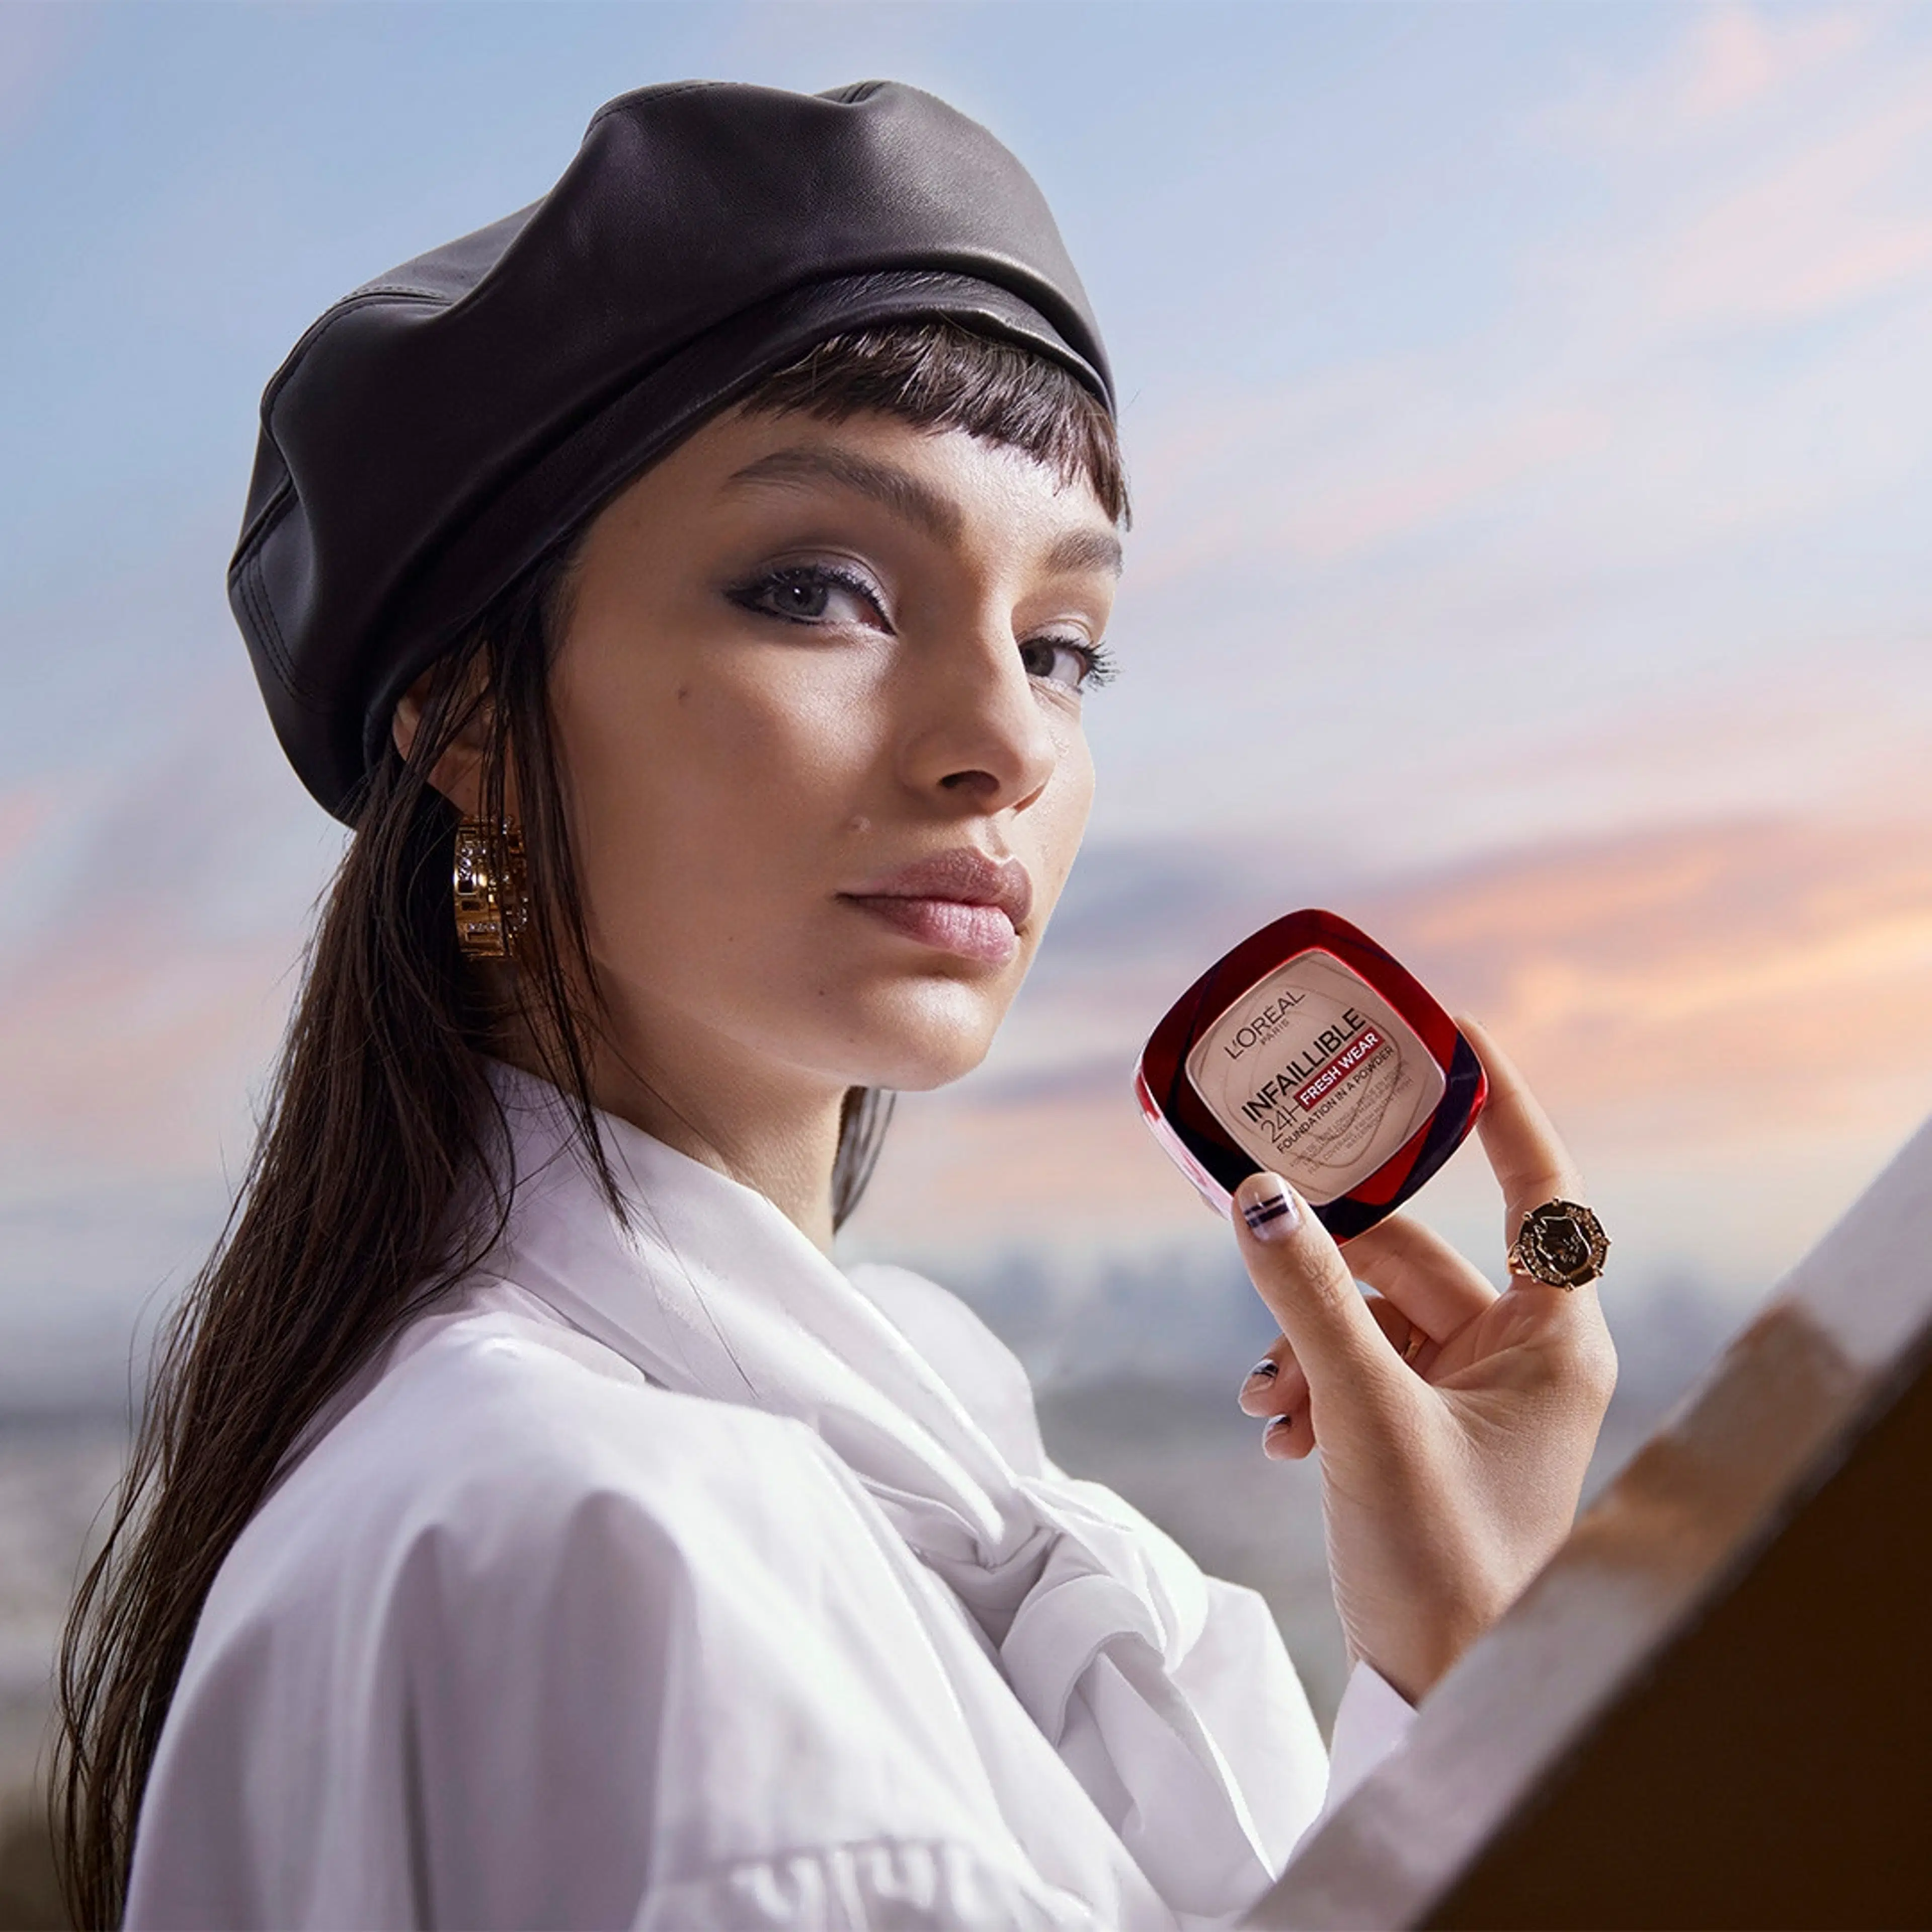 L'Oréal Paris Infaillible 24h Fresh Wear 180 Rose Sand meikkipuuteri 9 g